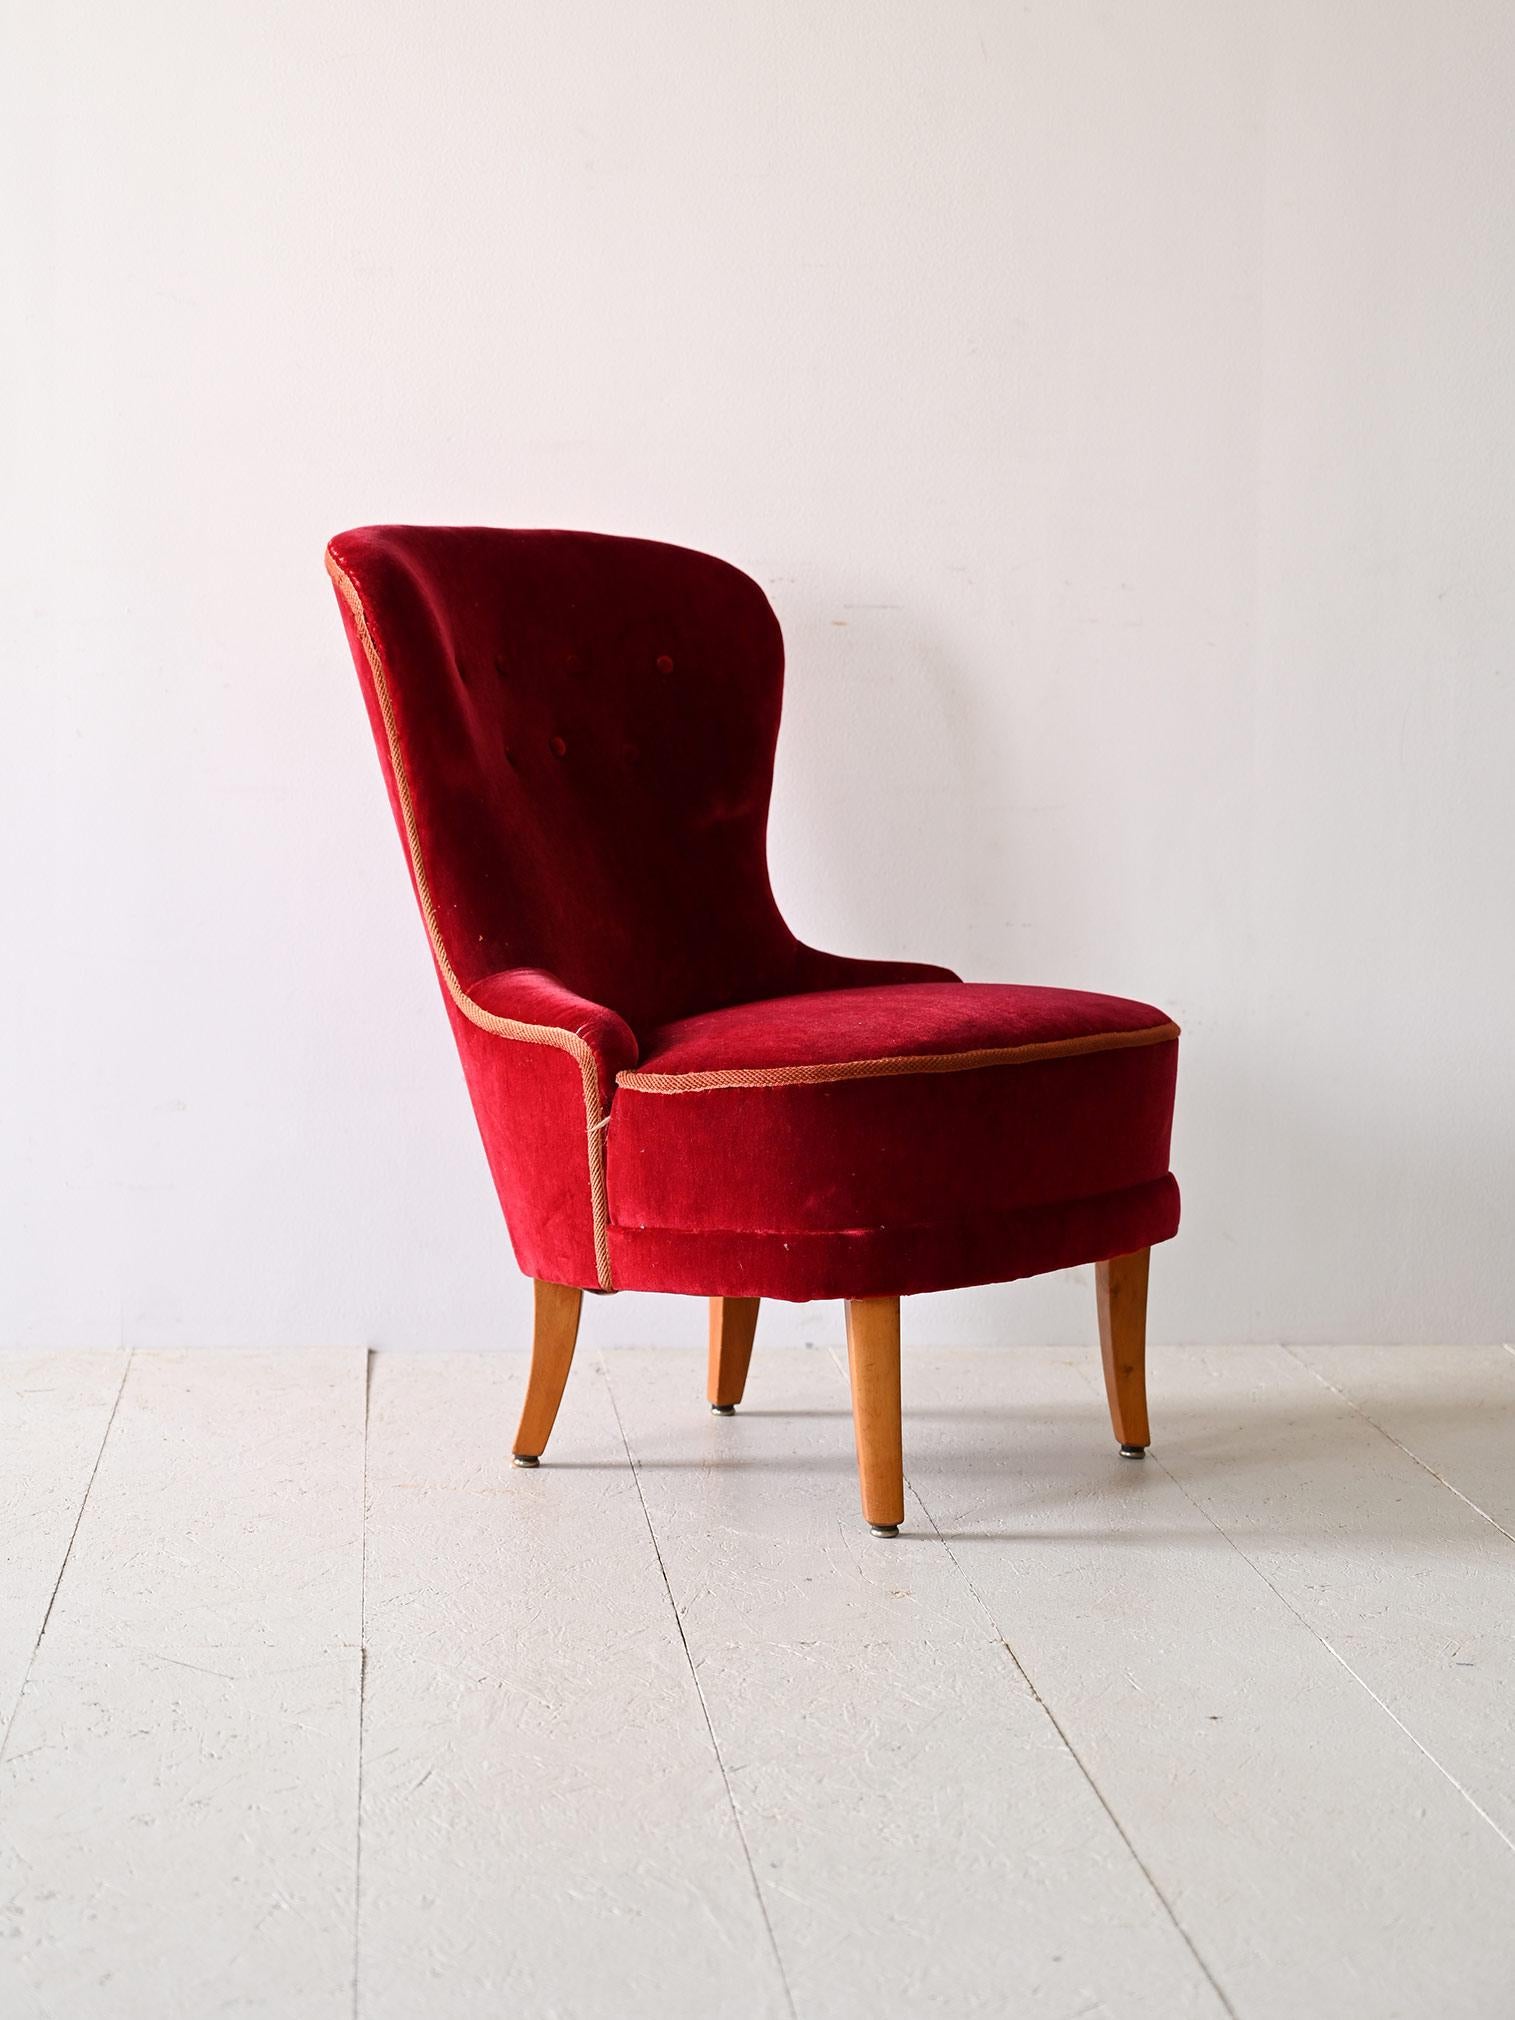 Fauteuil vintage en velours rouge.

Ce fauteuil en velours rouge incarne l'élégance et la sophistication du style scandinave des années 1940. Ses pieds fuselés apportent une touche de légèreté et de modernité à la structure, tandis que les